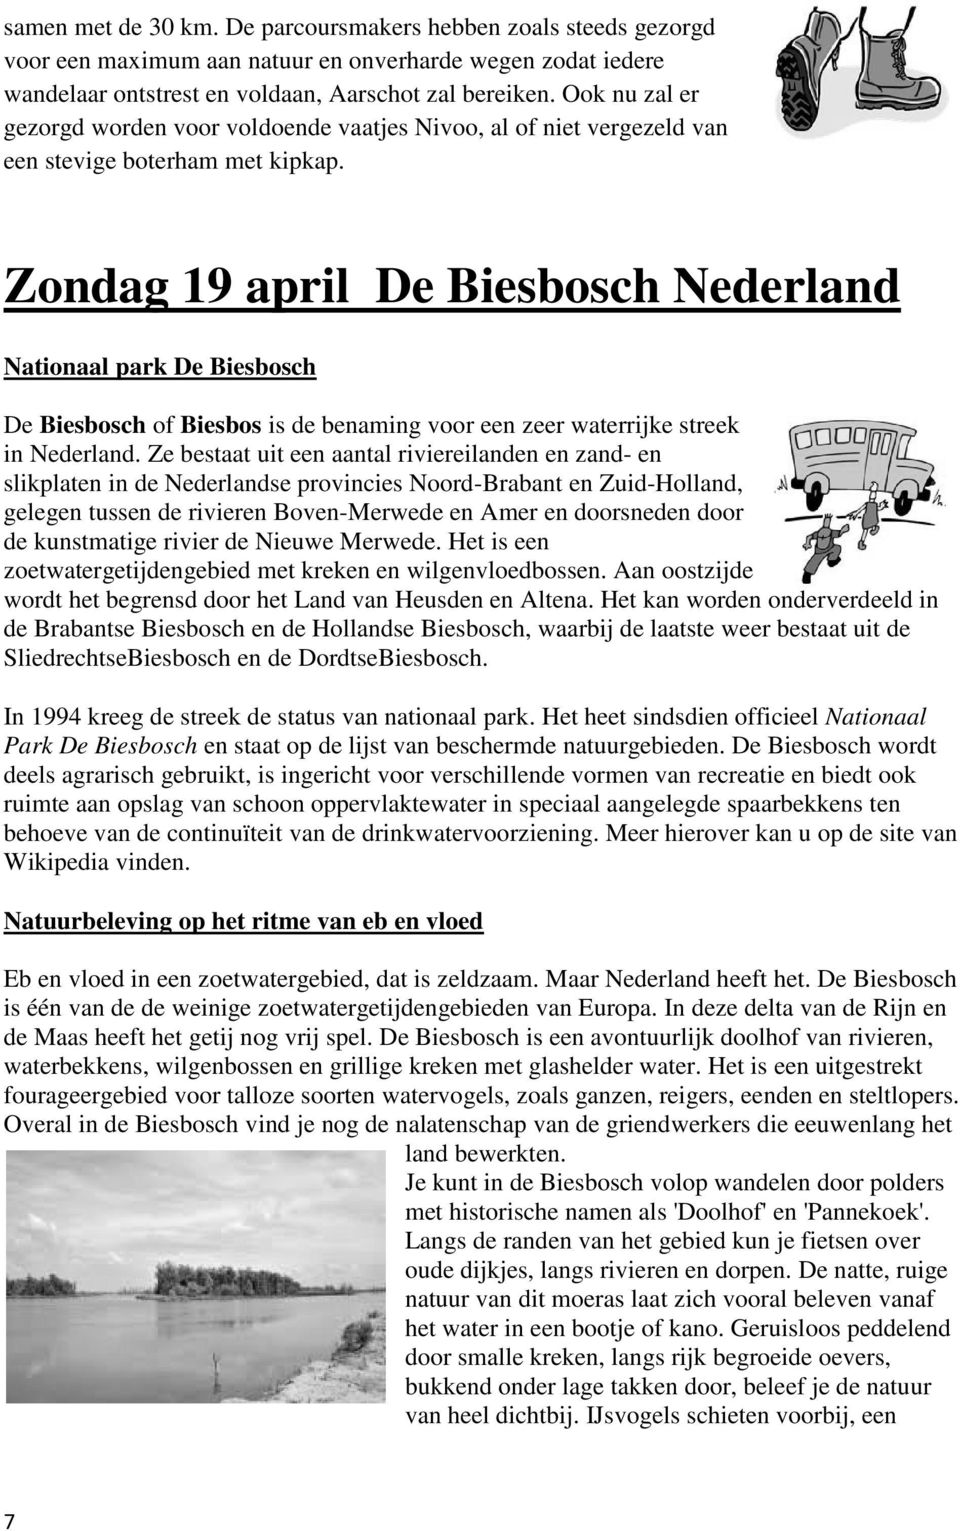 Zondag 19 april De Biesbosch Nederland Nationaal park De Biesbosch De Biesbosch of Biesbos is de benaming voor een zeer waterrijke streek in Nederland.